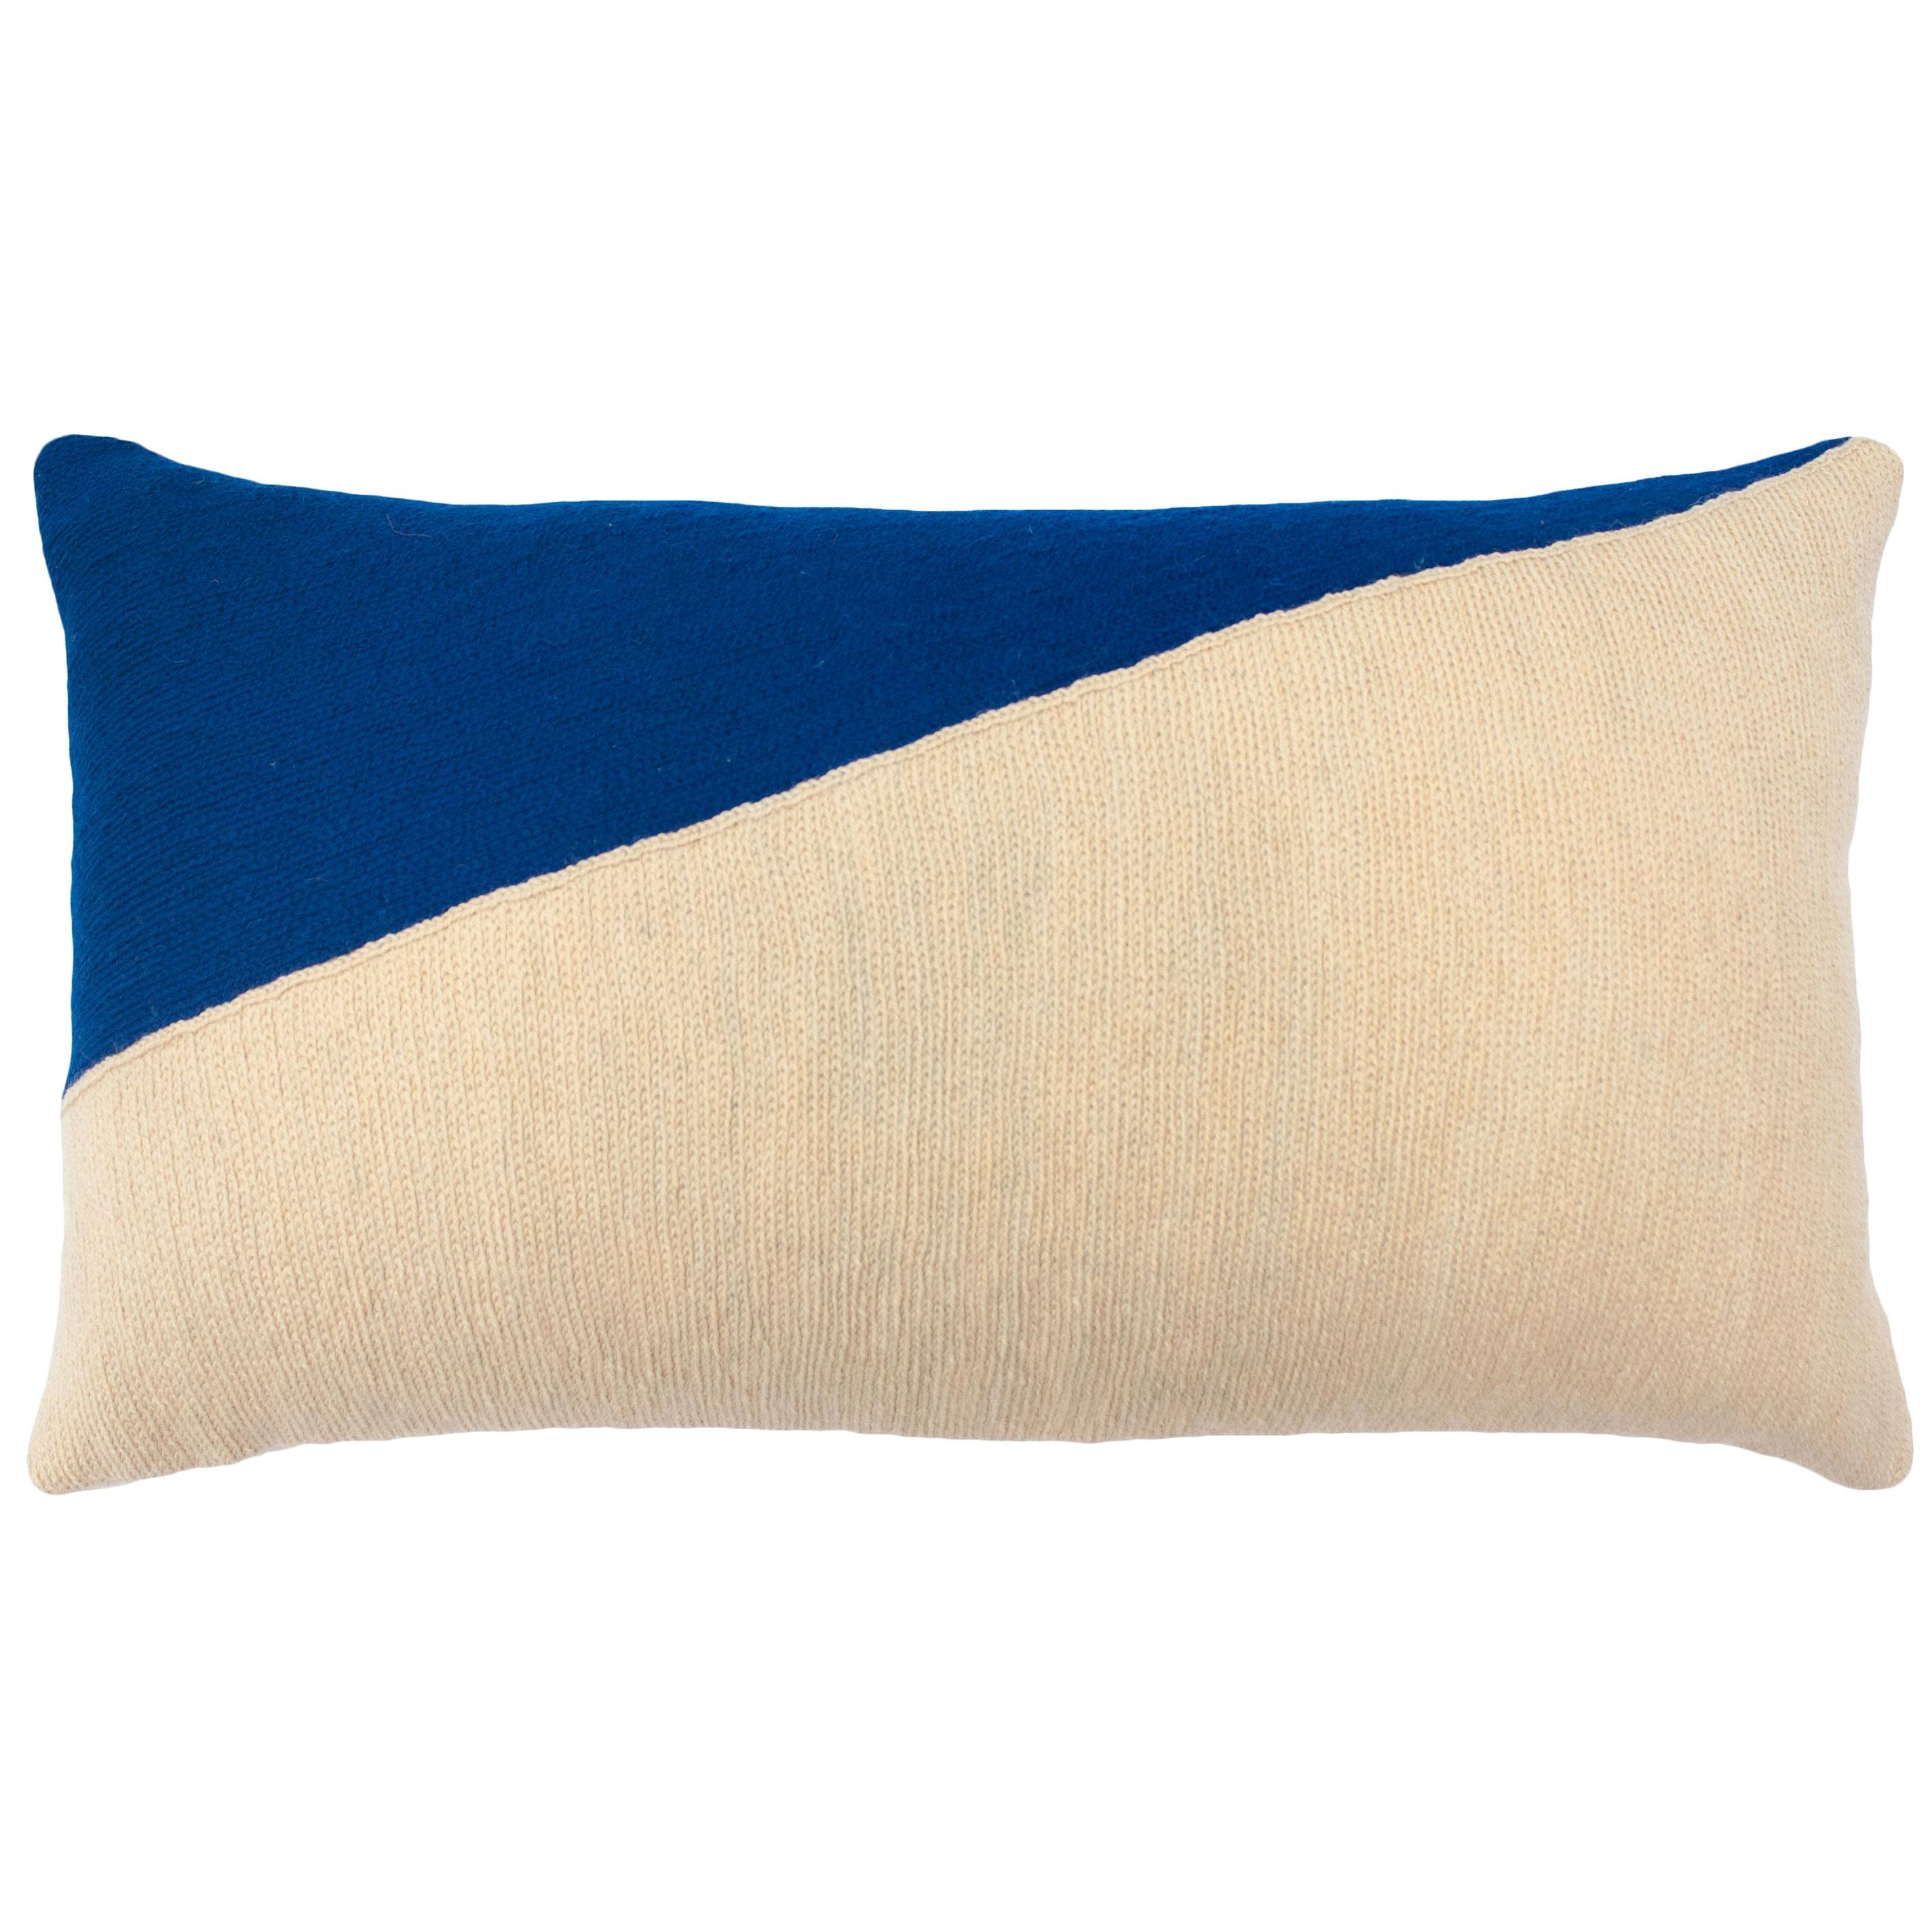 Marianne - Triangle - Housse d'oreiller décoratif moderne géométrique bleu triangulaire brodée à la main